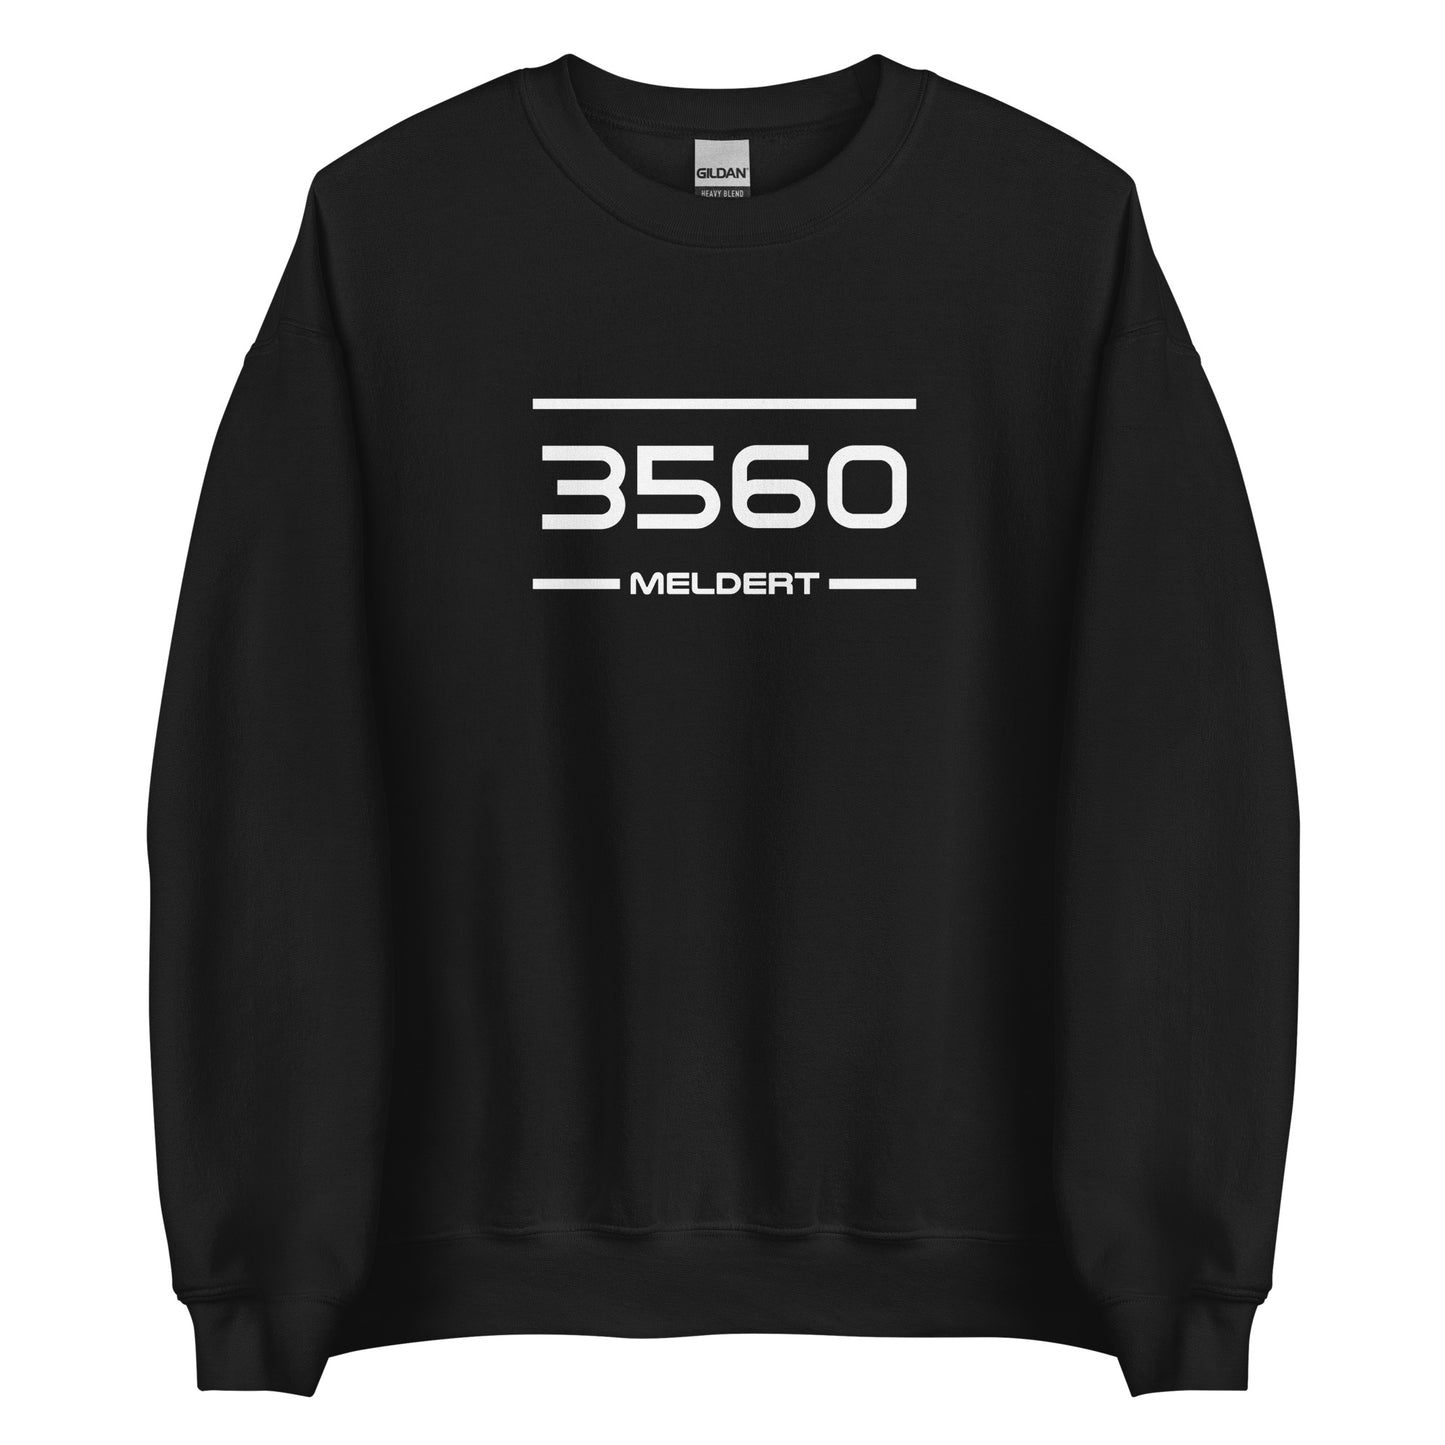 Sweater - 3560 - Meldert (M/V)